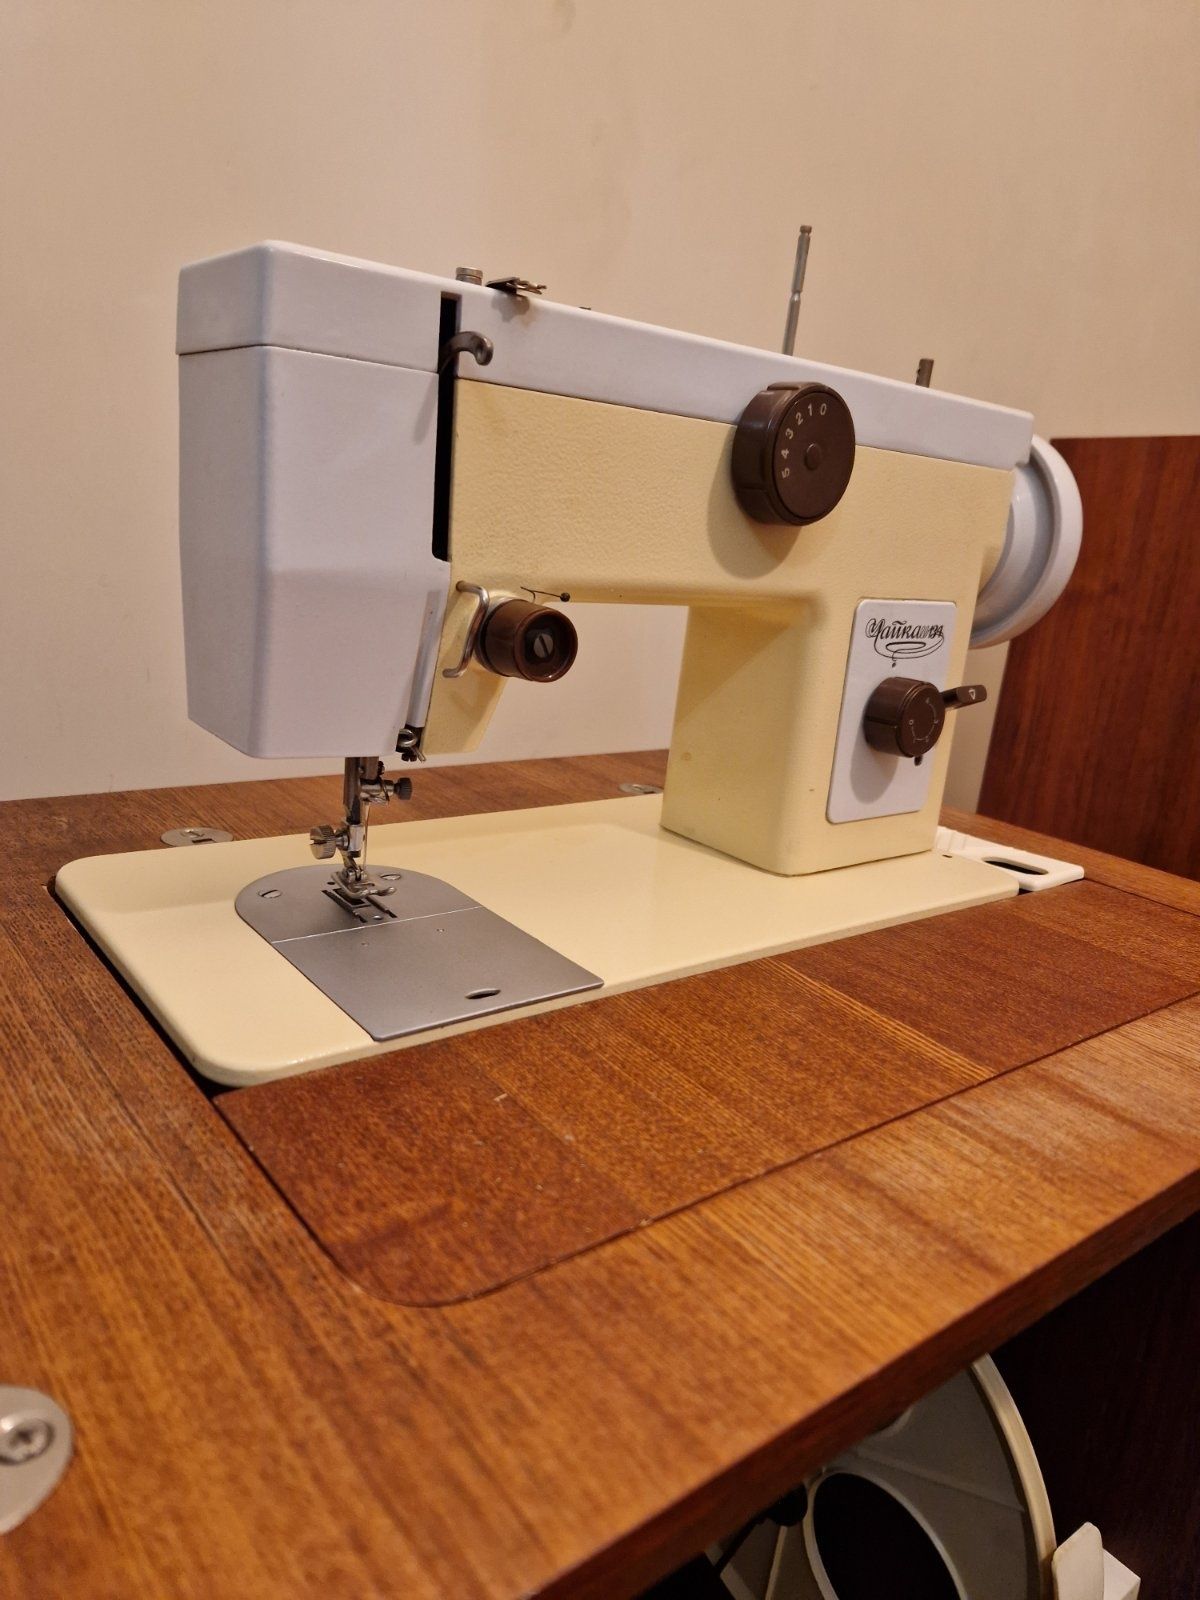 Швейная машинка Чайка 134